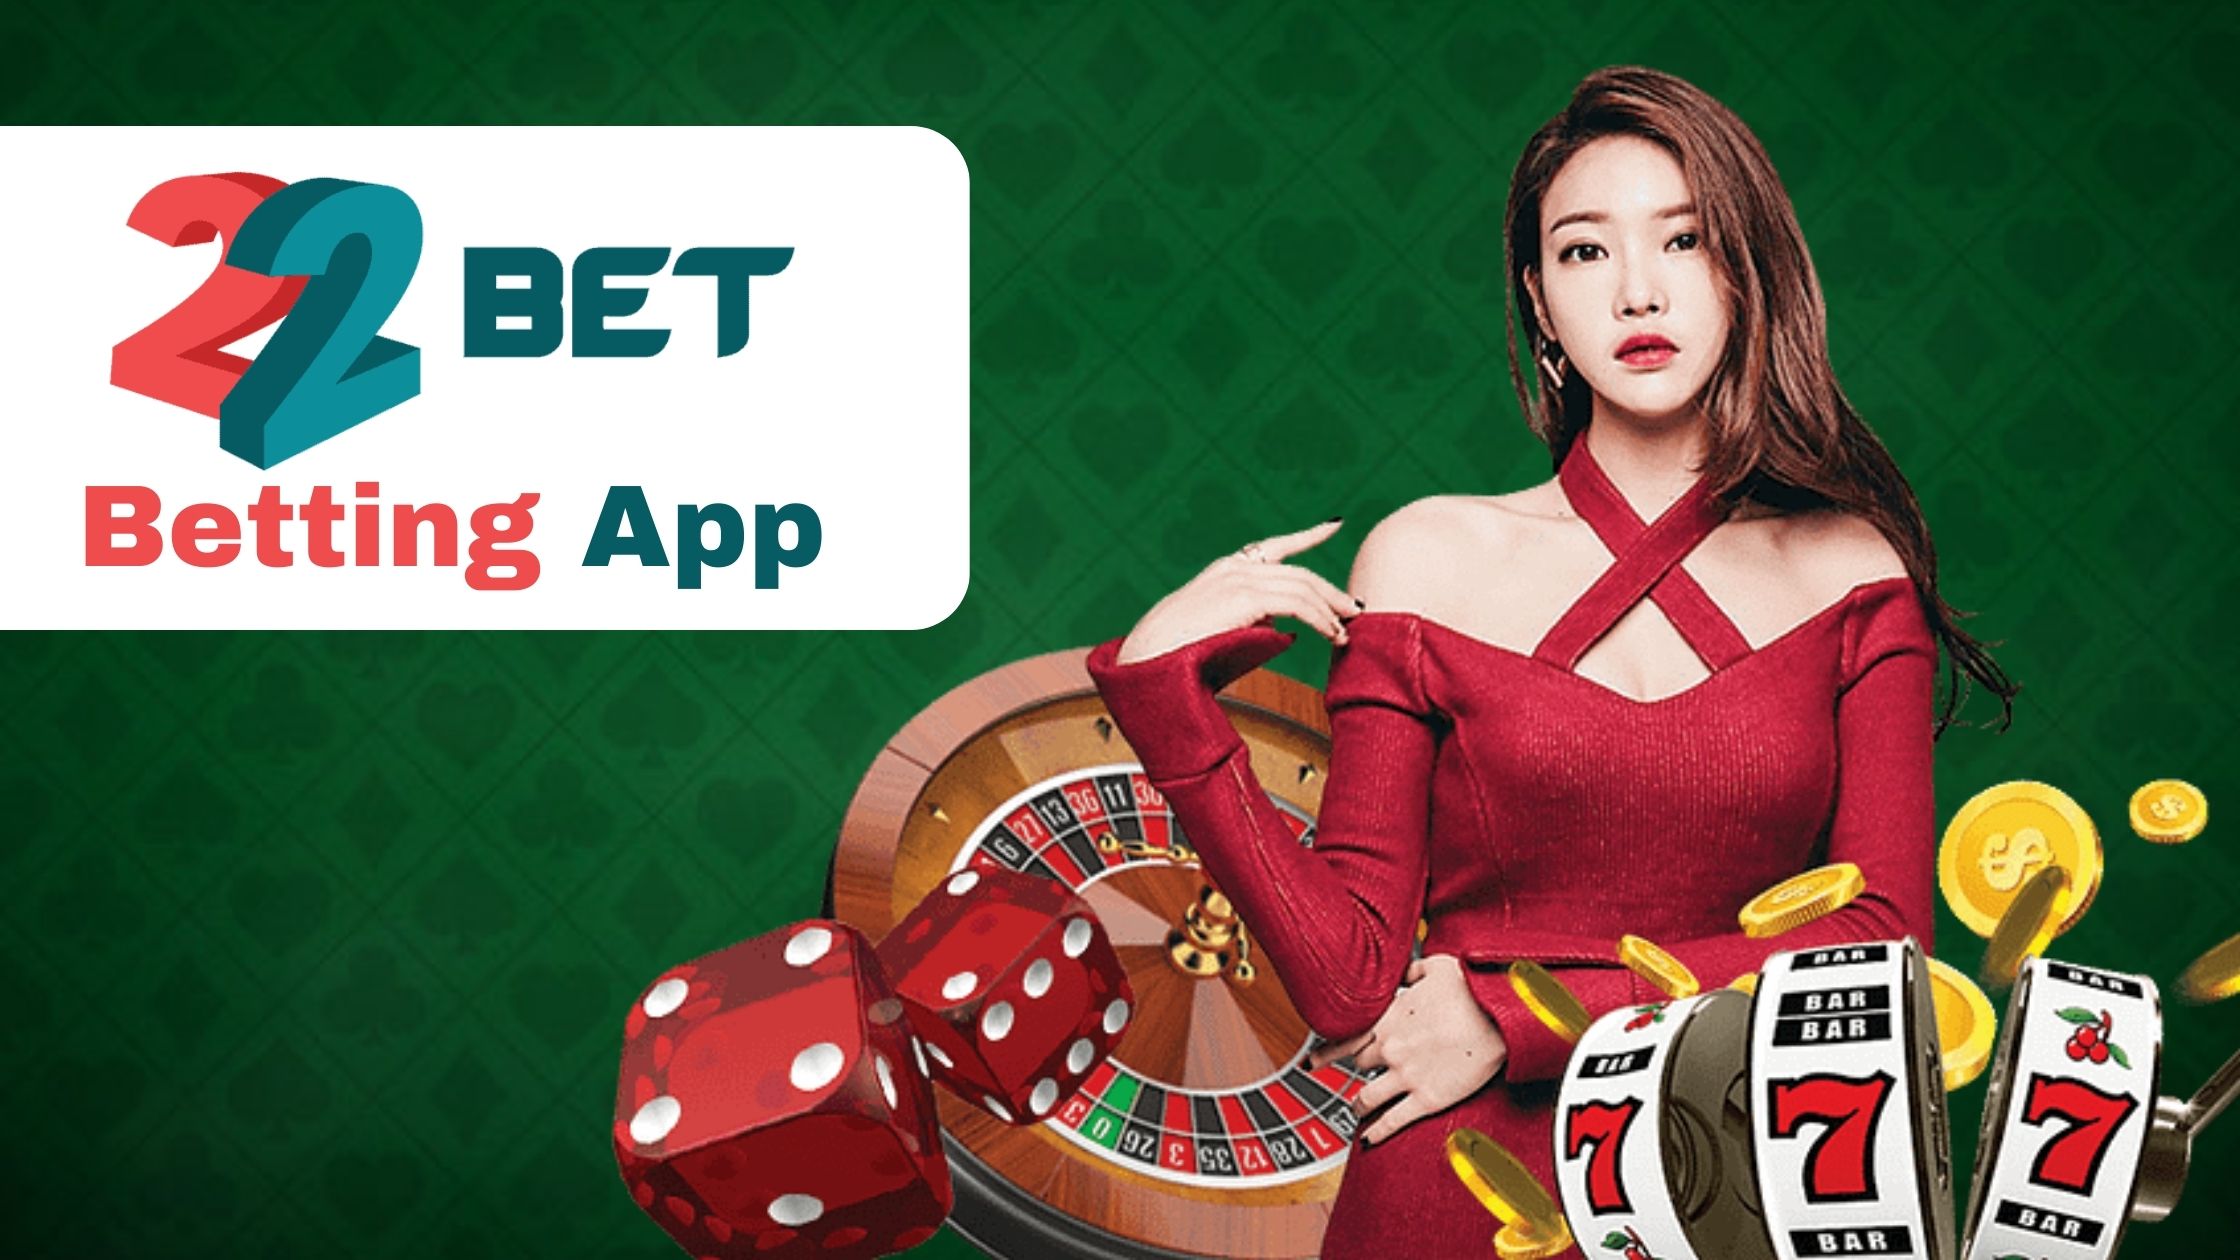 22Bet (Online Betting App)